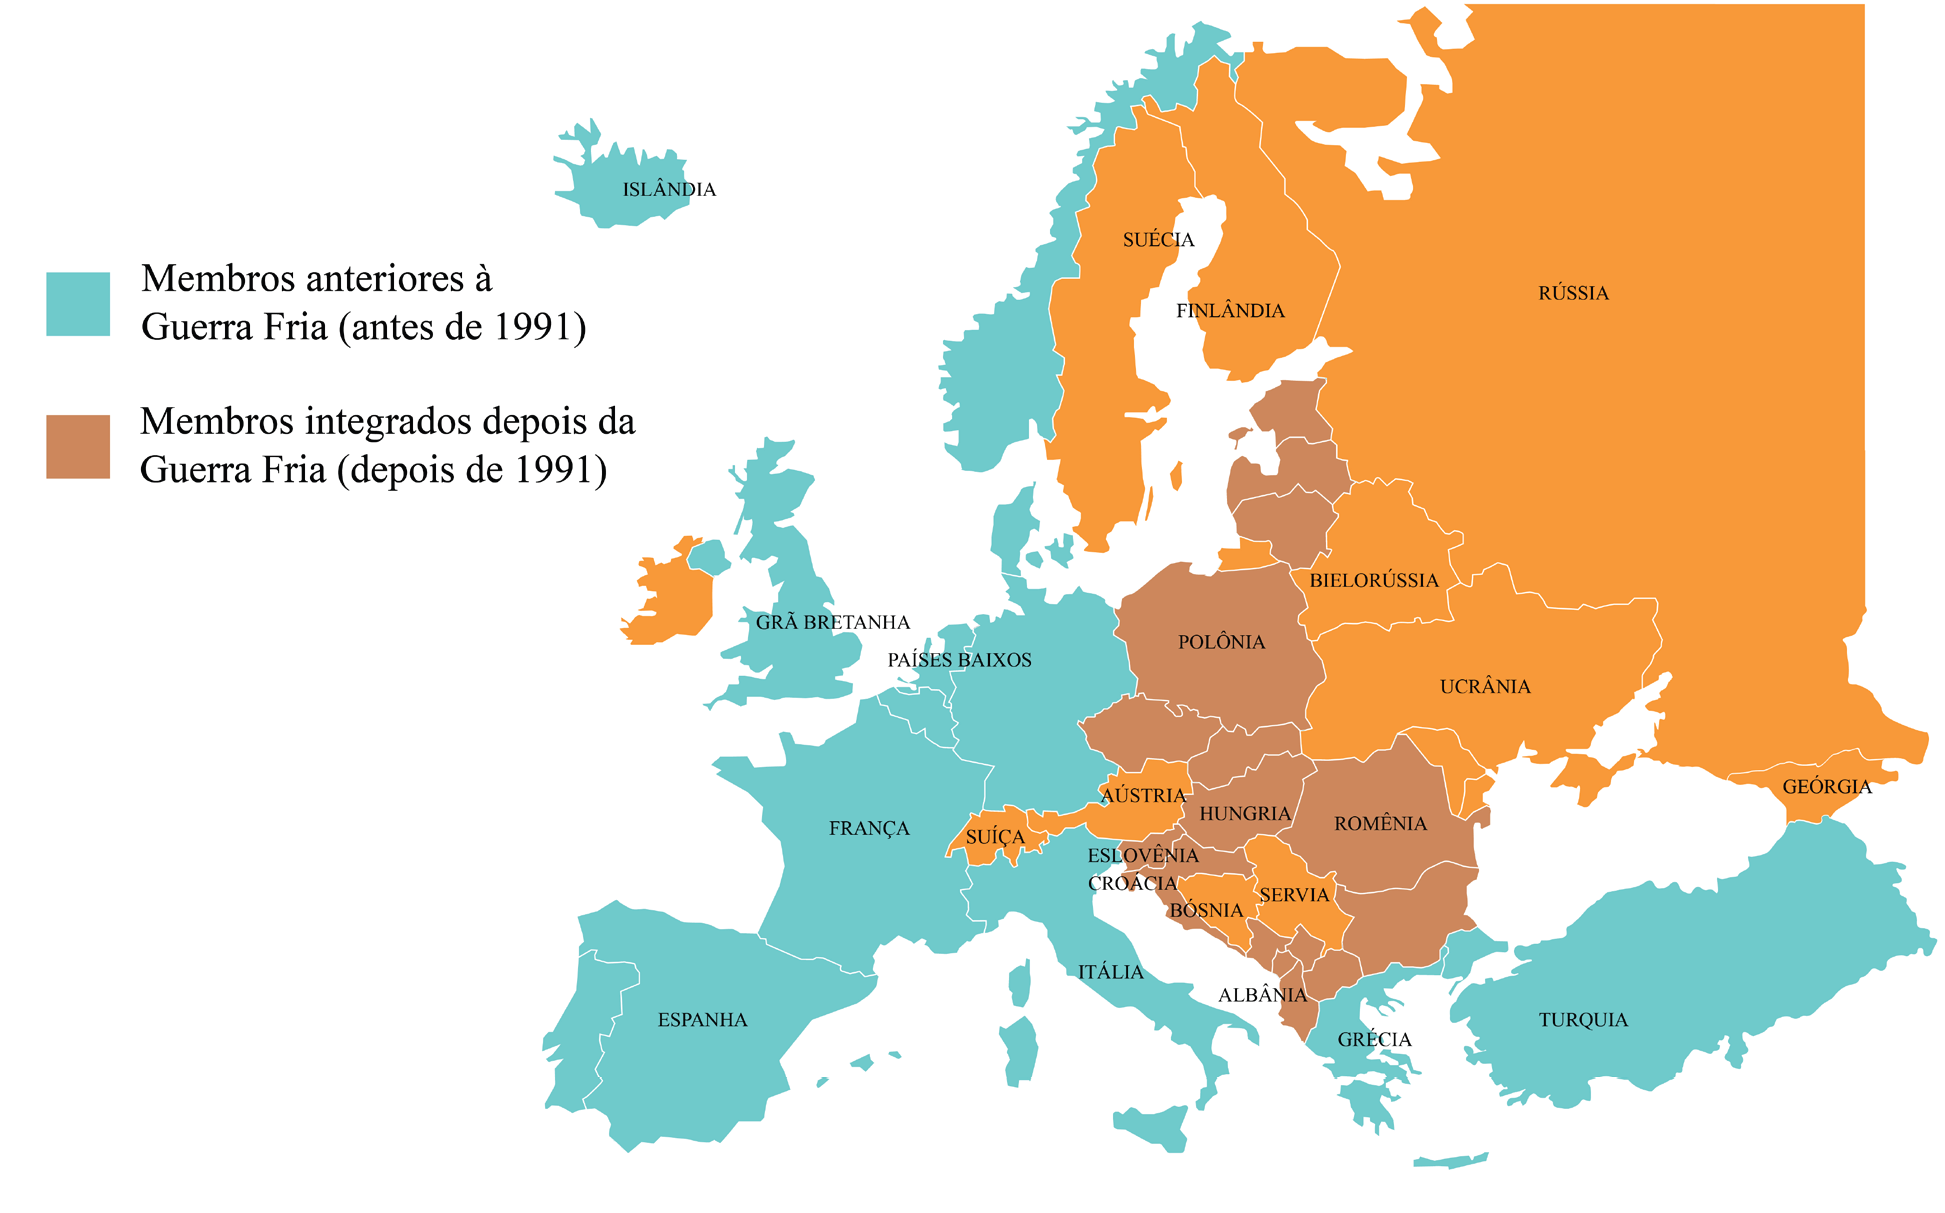 Figura 4 – Membros Europeus da OTAN. Fonte: Mapa editado pelos autores a partir de gráfico publicado pela CNN Español (2022).